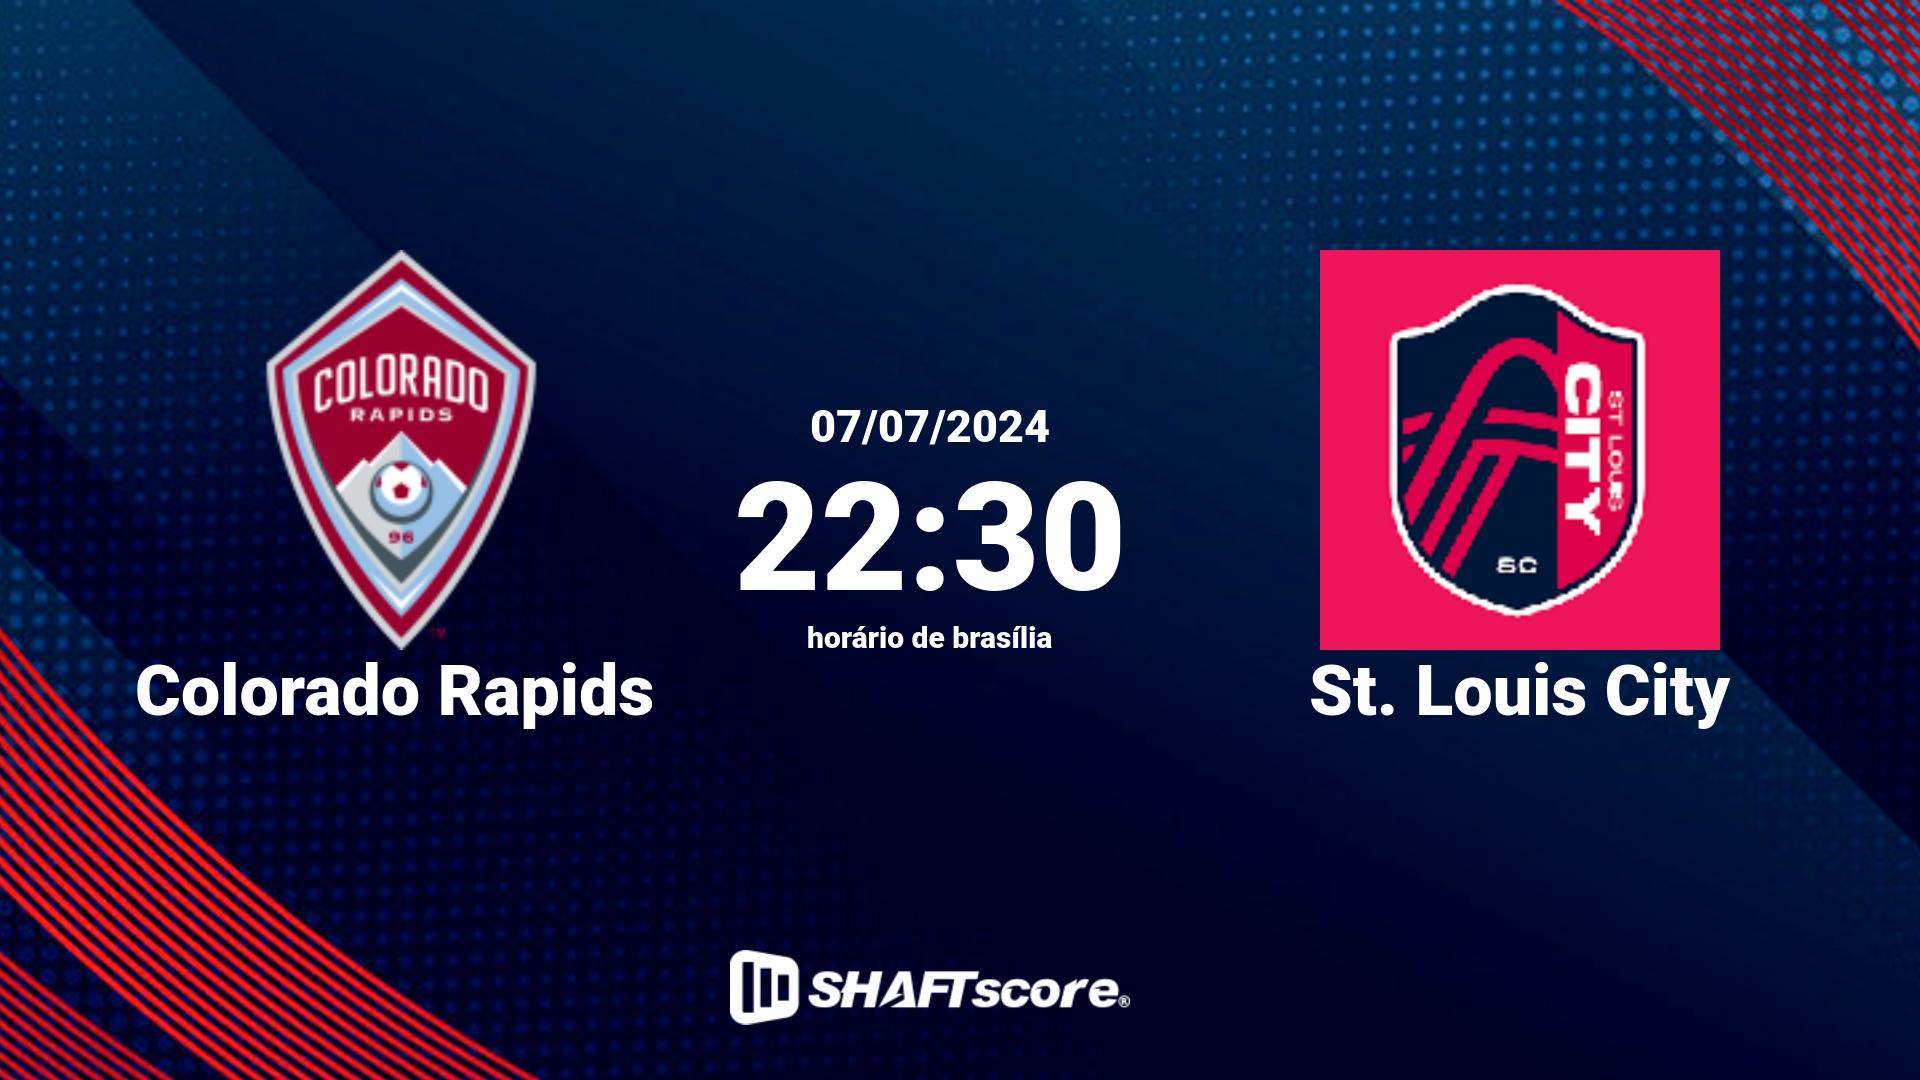 Estatísticas do jogo Colorado Rapids vs St. Louis City 07.07 22:30